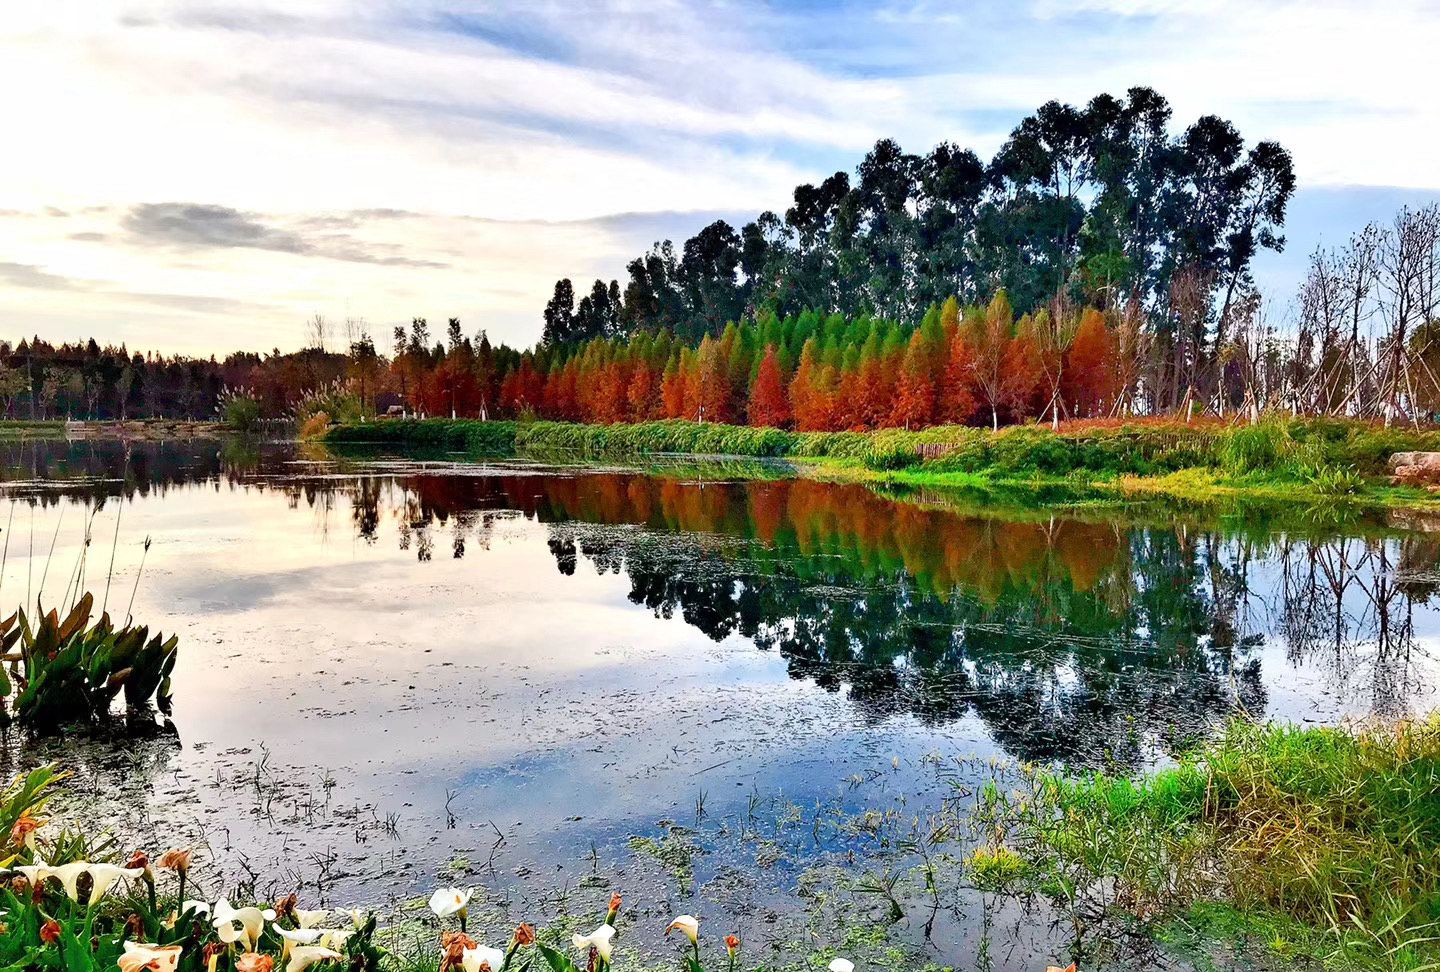 1 / 9 昆明红海湿地公园位于昆明市昆阳镇,是围绕滇池生态以水为主体